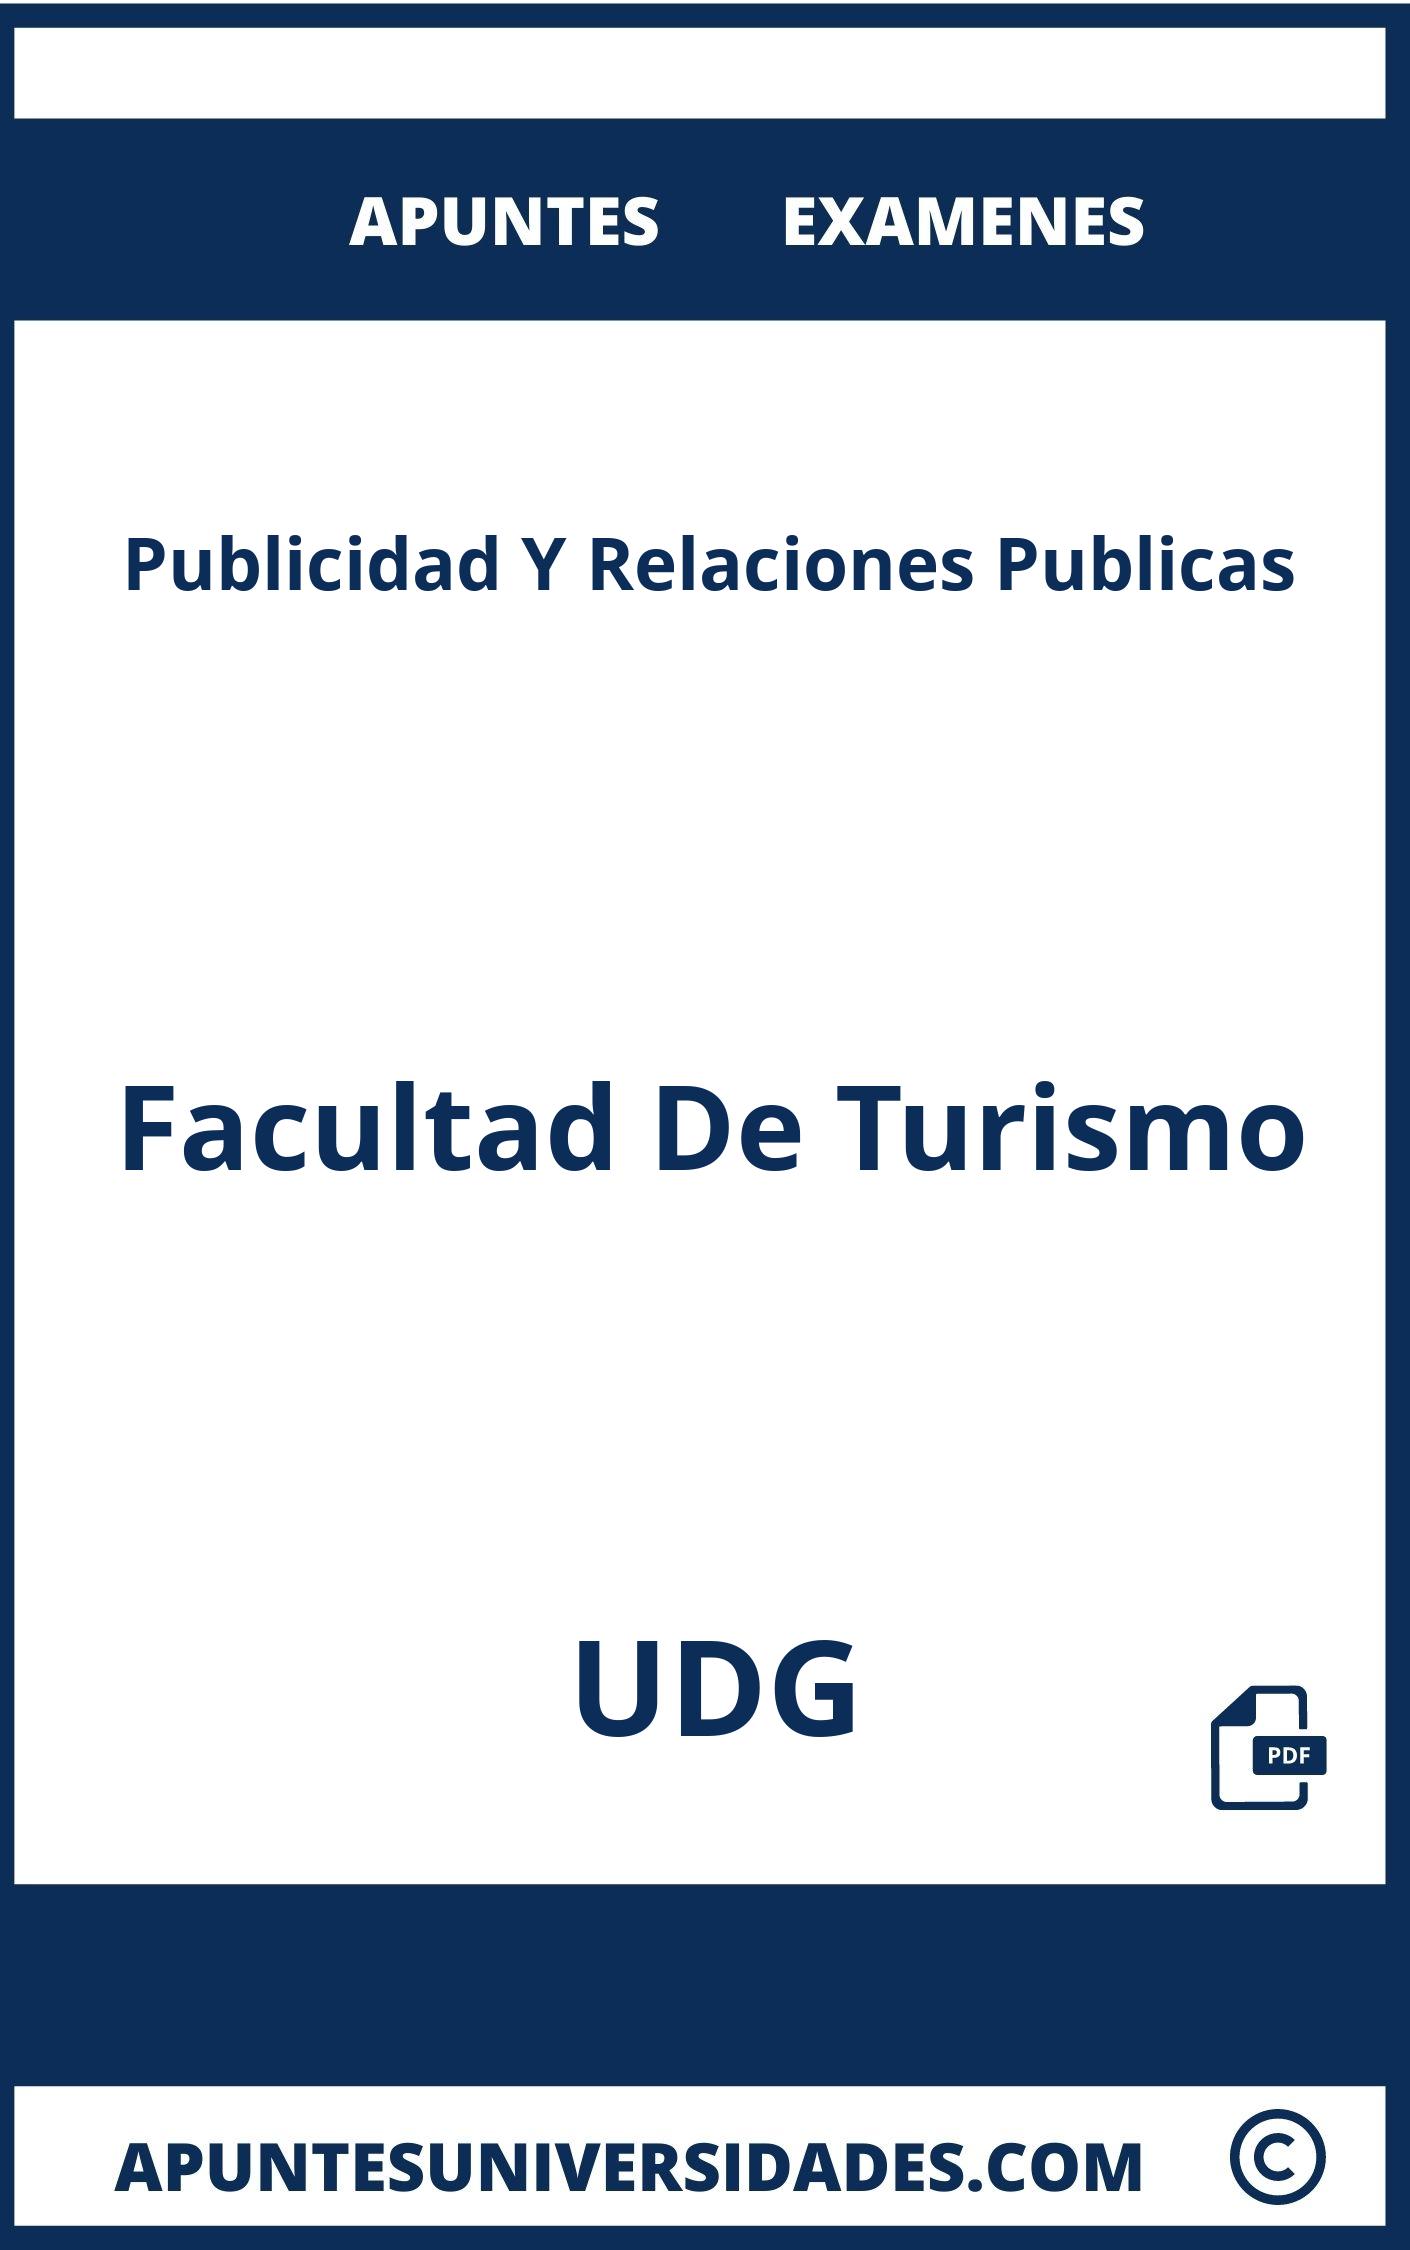 Apuntes y Examenes Publicidad Y Relaciones Publicas UDG